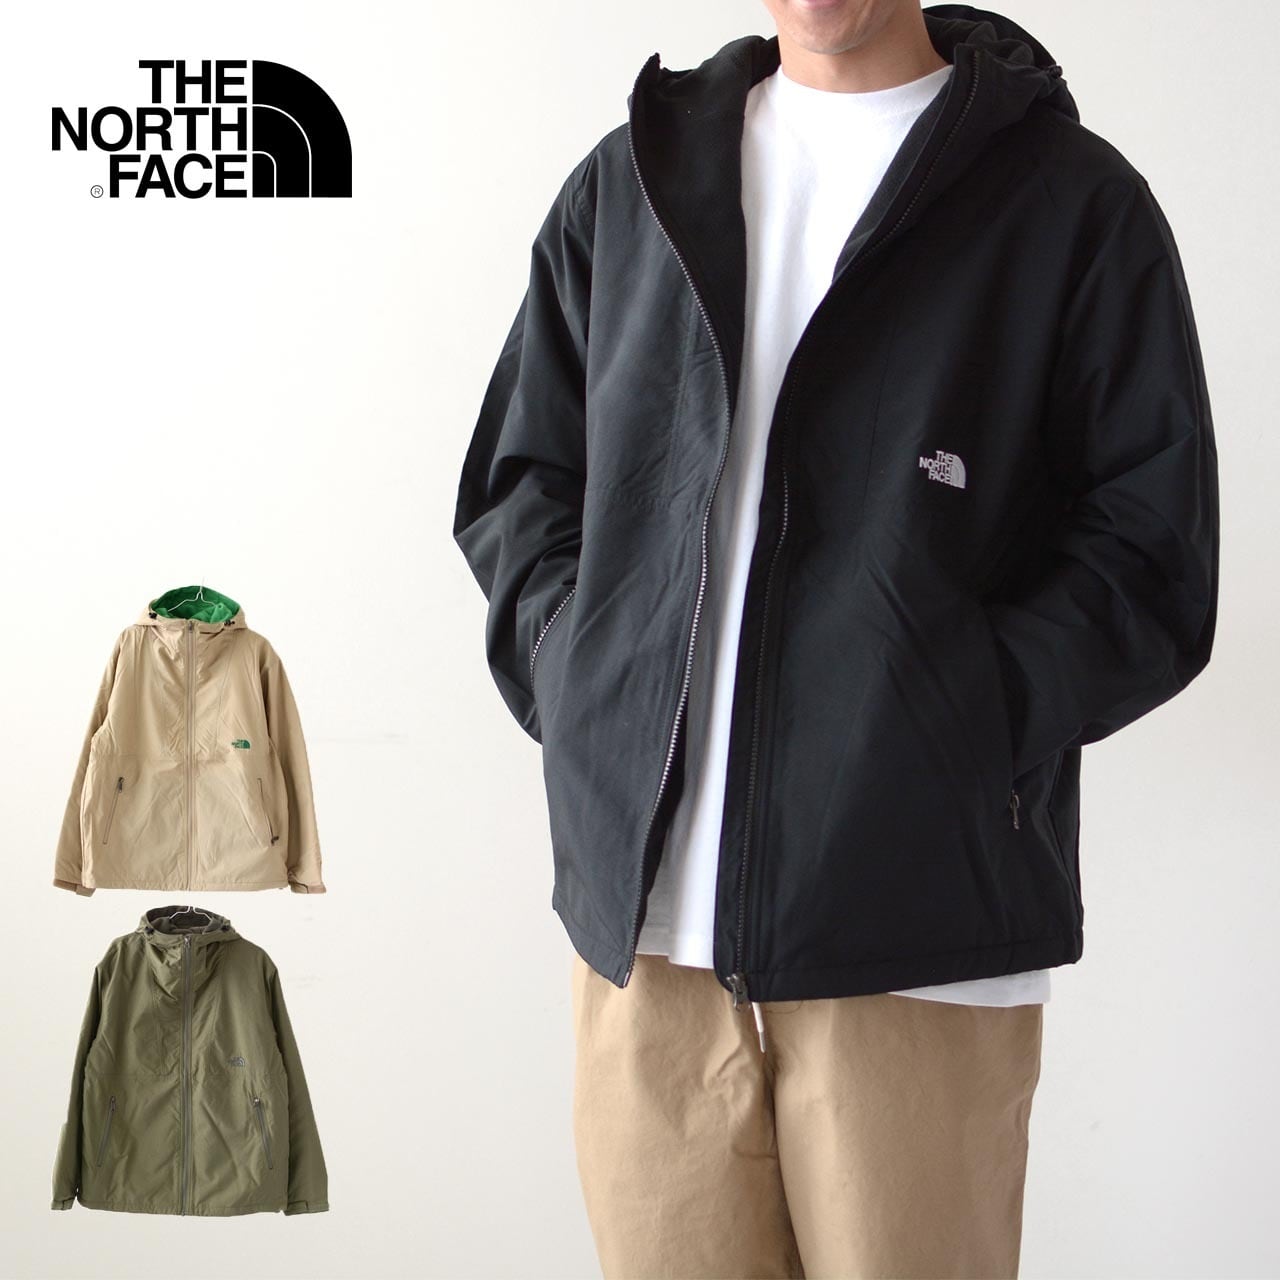 THE NORTH FACE [ザ・ノース・フェイス正規代理店] Compact Nomad Jacket [NP71933]  コンパクトノマドジャケット・裏フリース・フリースジャケット・軽量ジャケット・防風・撥水・フード付きジャケット・保温・キャンプ・アウトドア・MEN'S  [2022AW] |